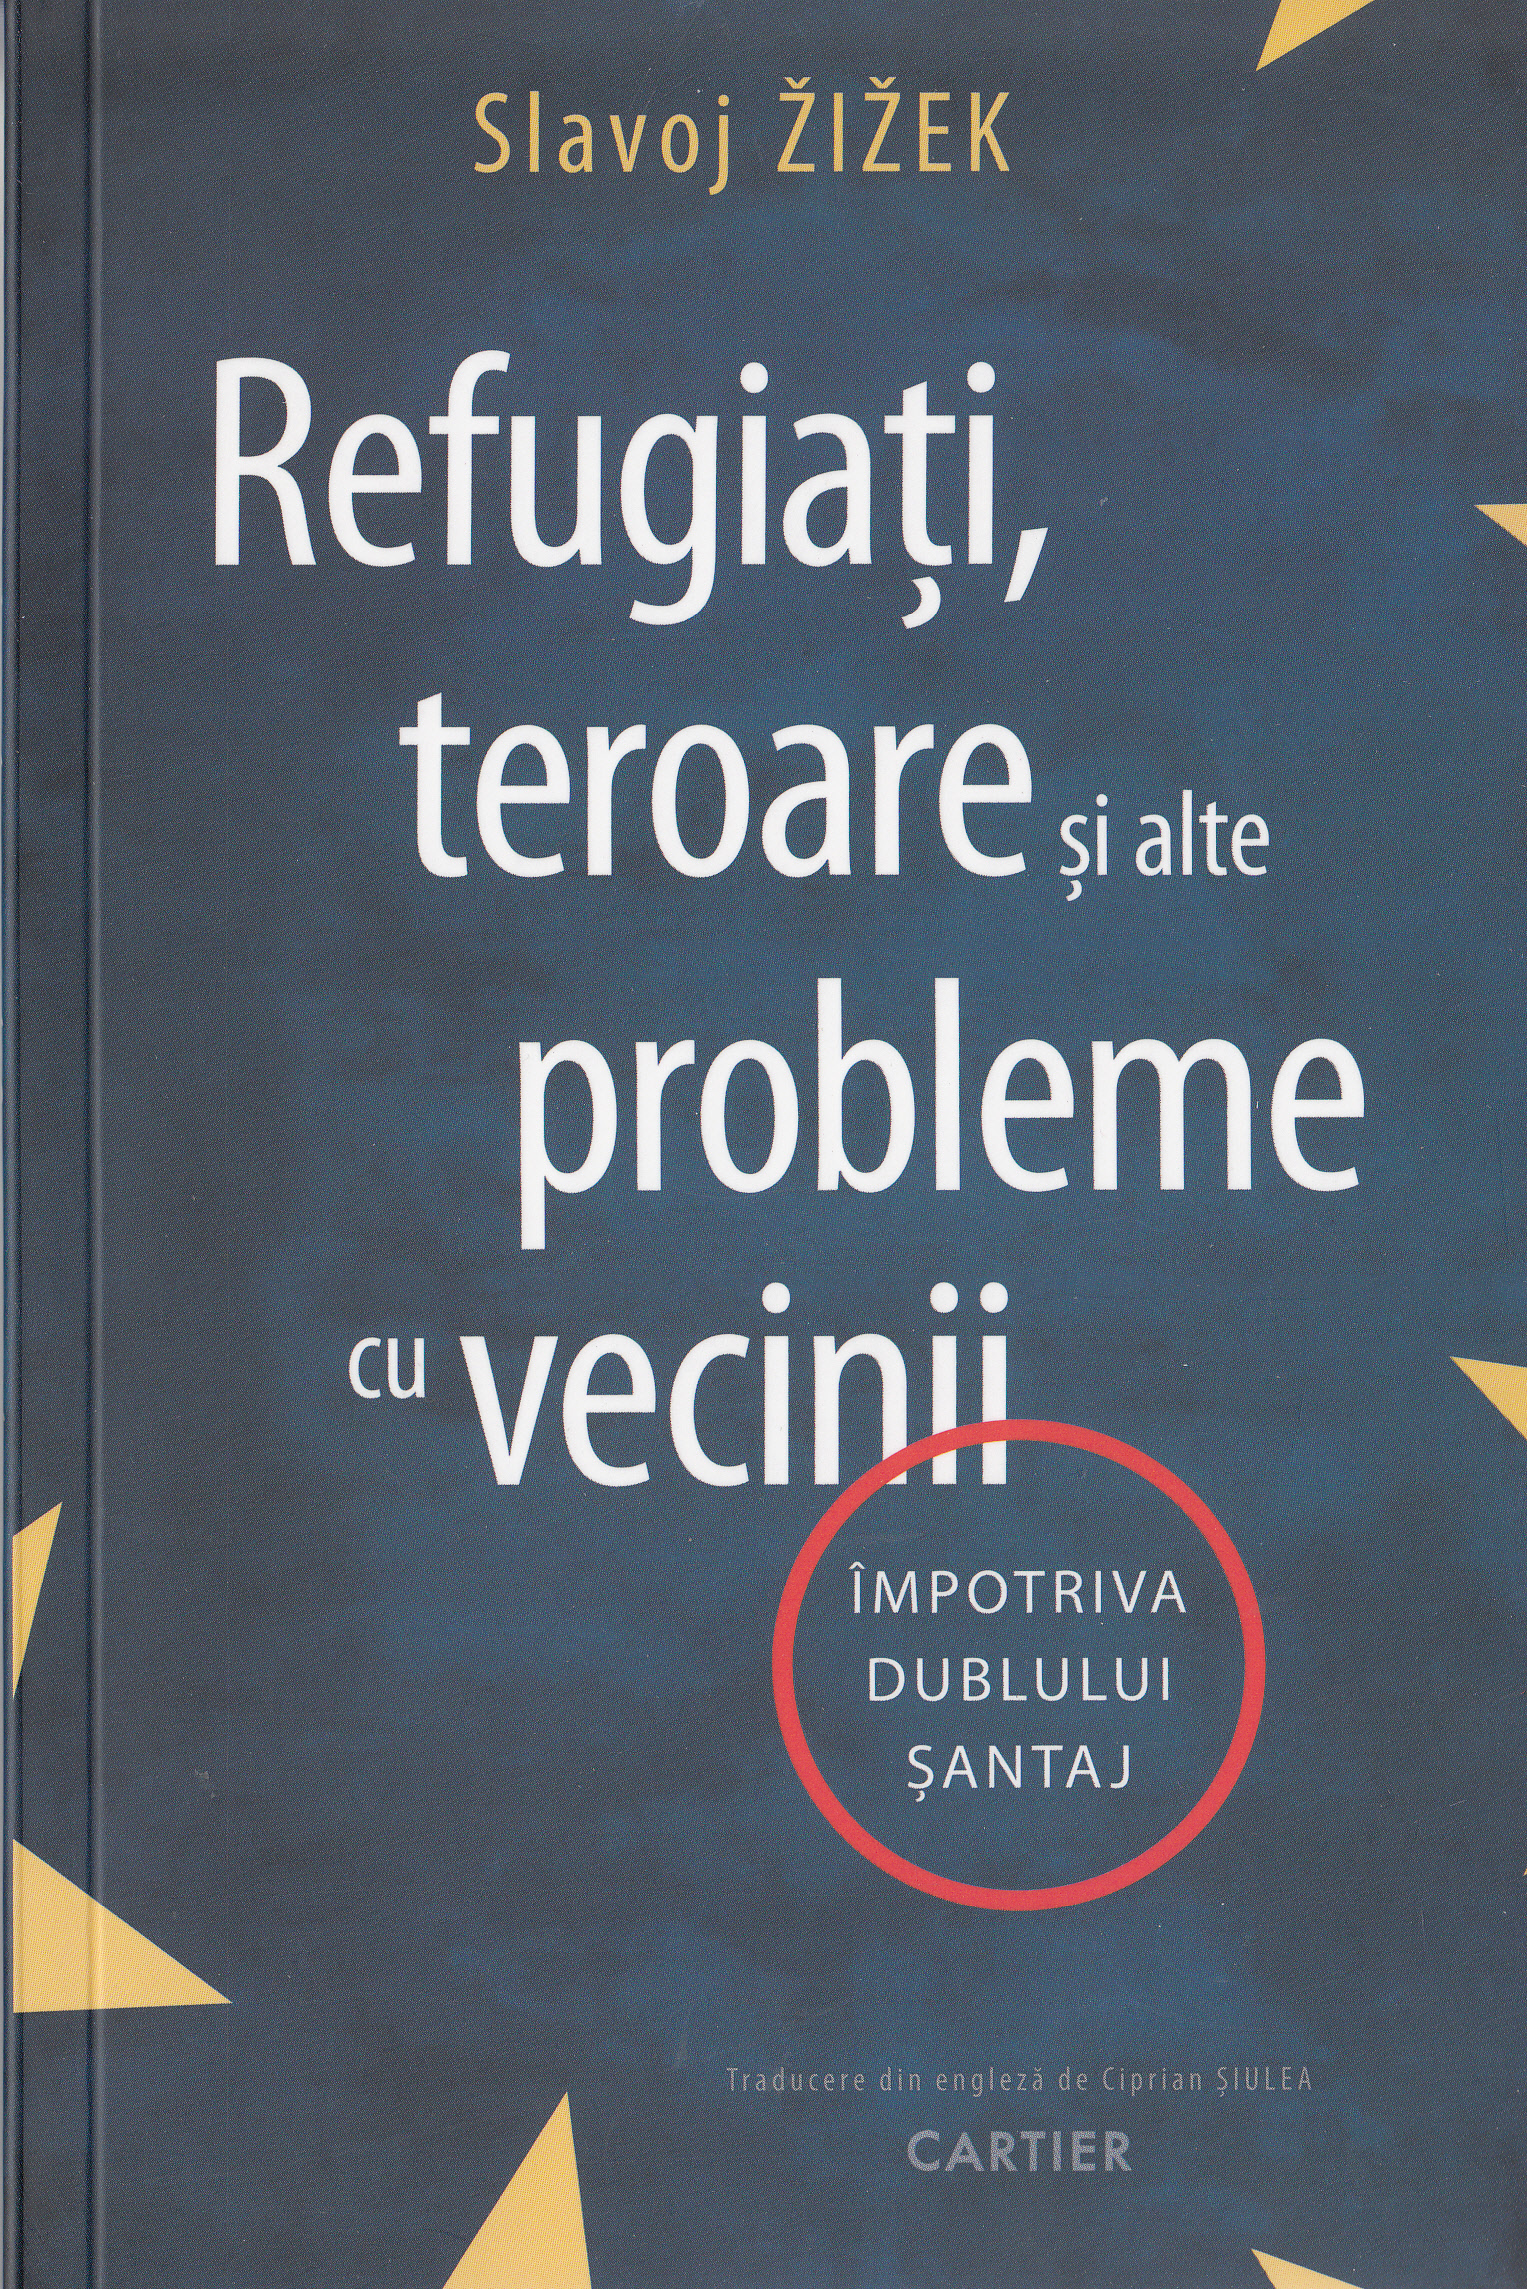 Refugiati, teroare si alte probleme cu vecinii - Slavoj Zizek